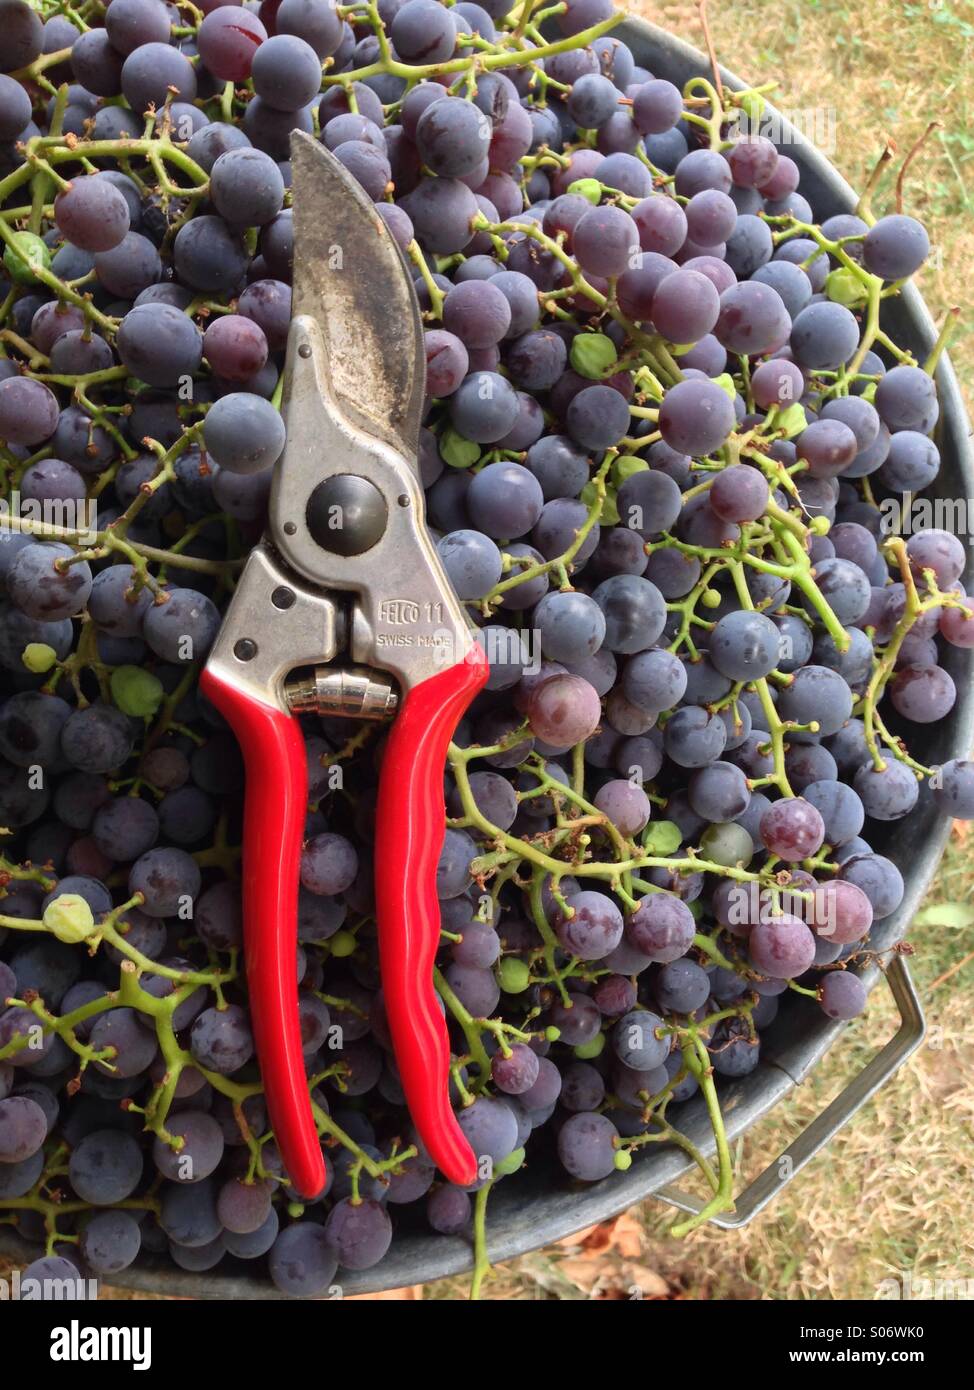 Cosecha de Otoño de uvas Concord. Foto de stock